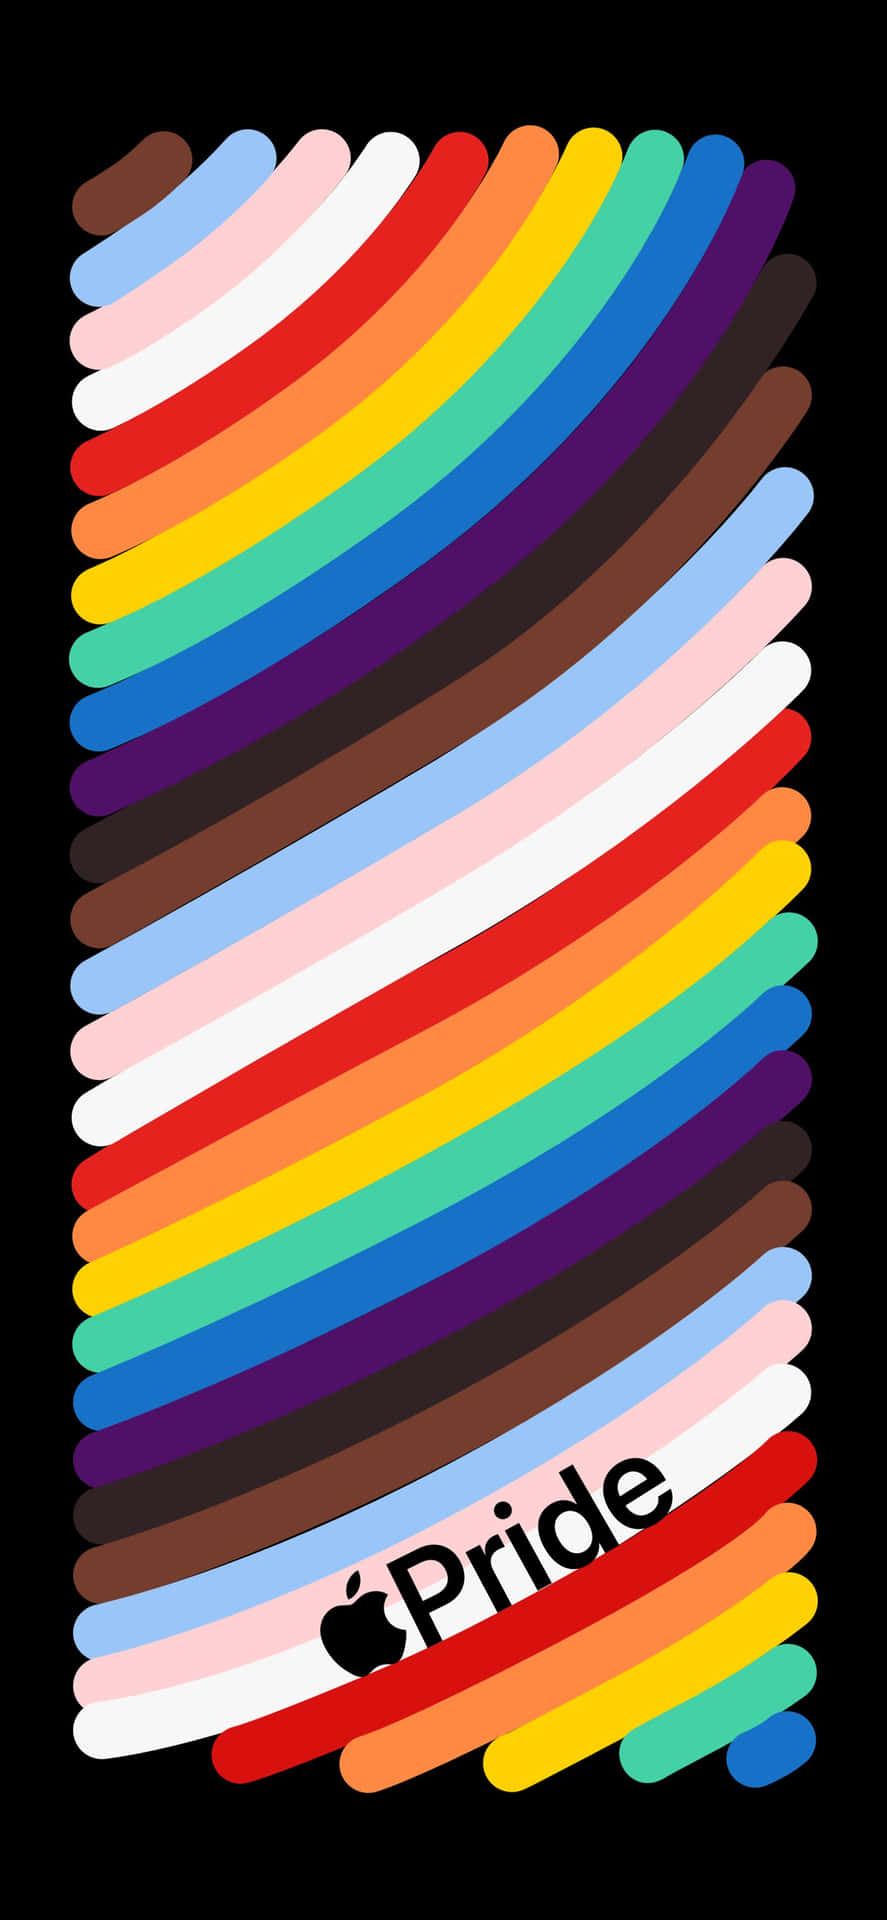 Applestolz - Regenbogenstreifen Wallpaper